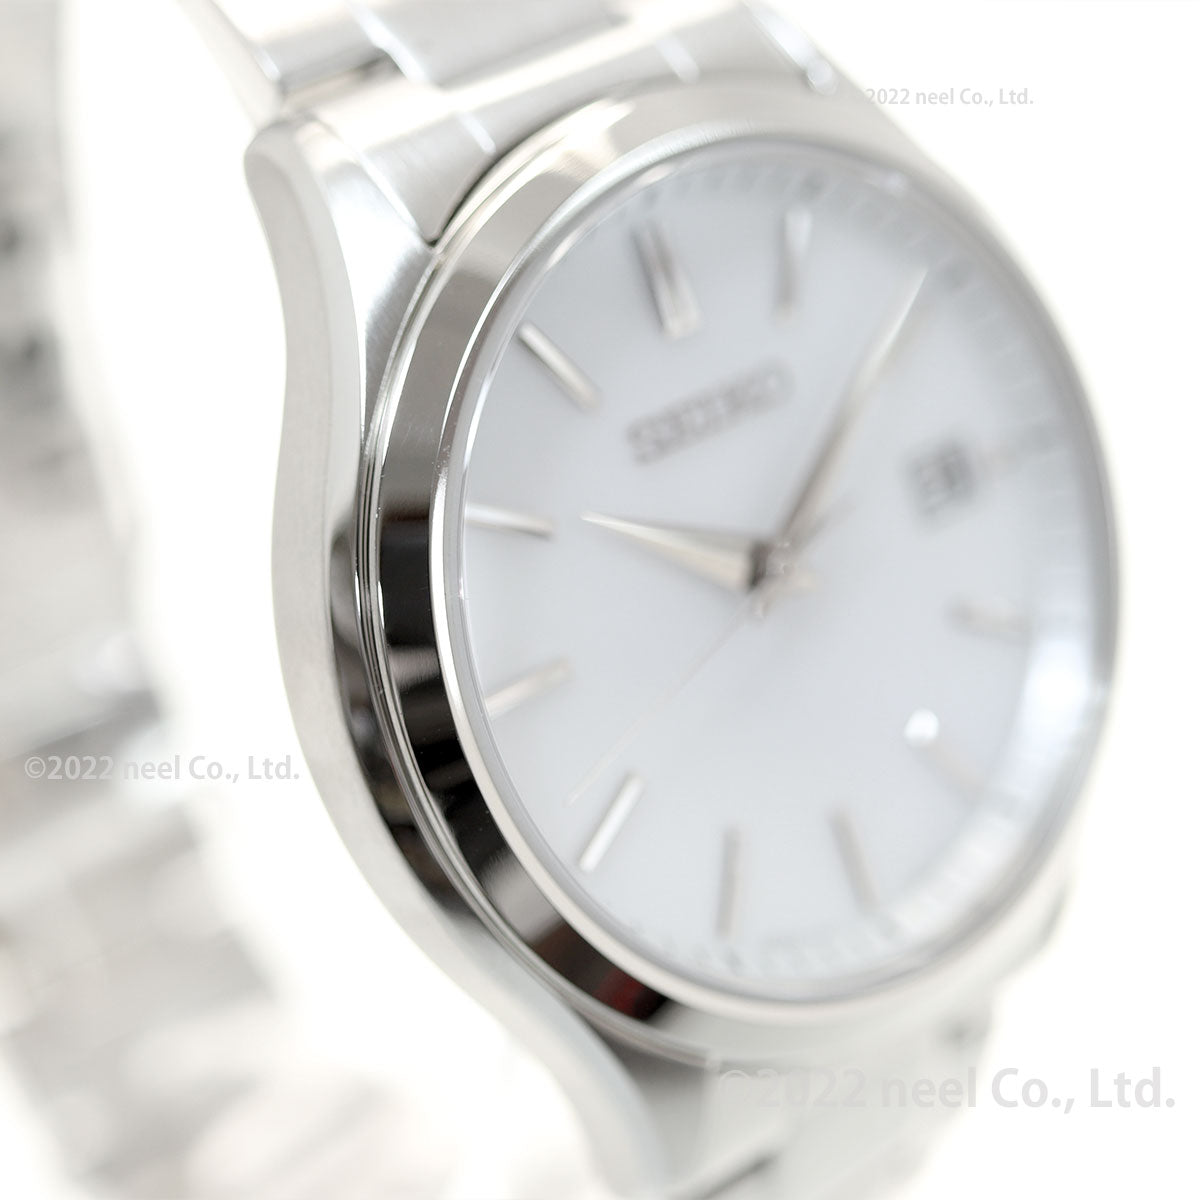 セイコー セレクション SEIKO SELECTION Sシリーズ ショップ専用 流通限定モデル ソーラー 腕時計 メンズ ペア SBPX143